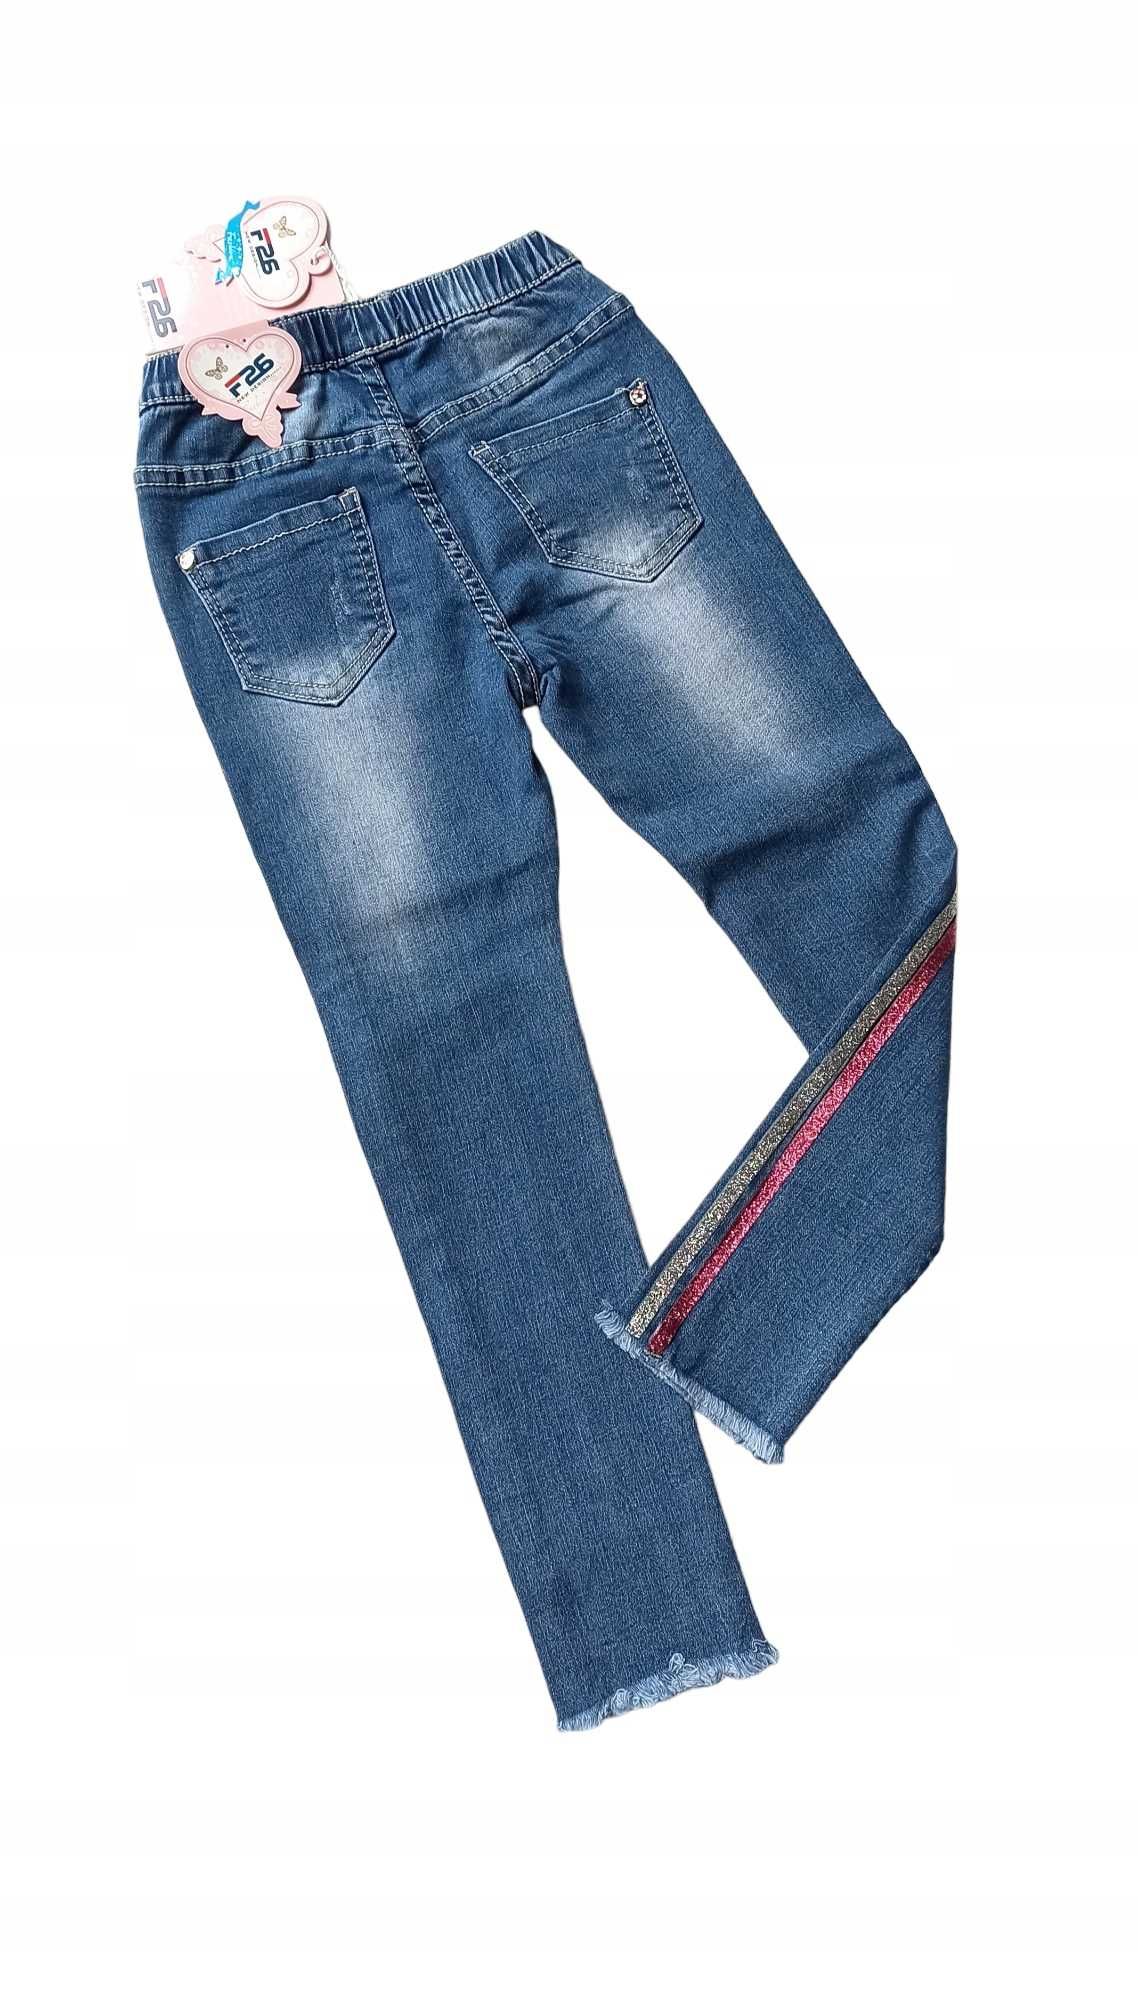 Spodnie jeans dla dziewczynki na gumce nowy 146-152